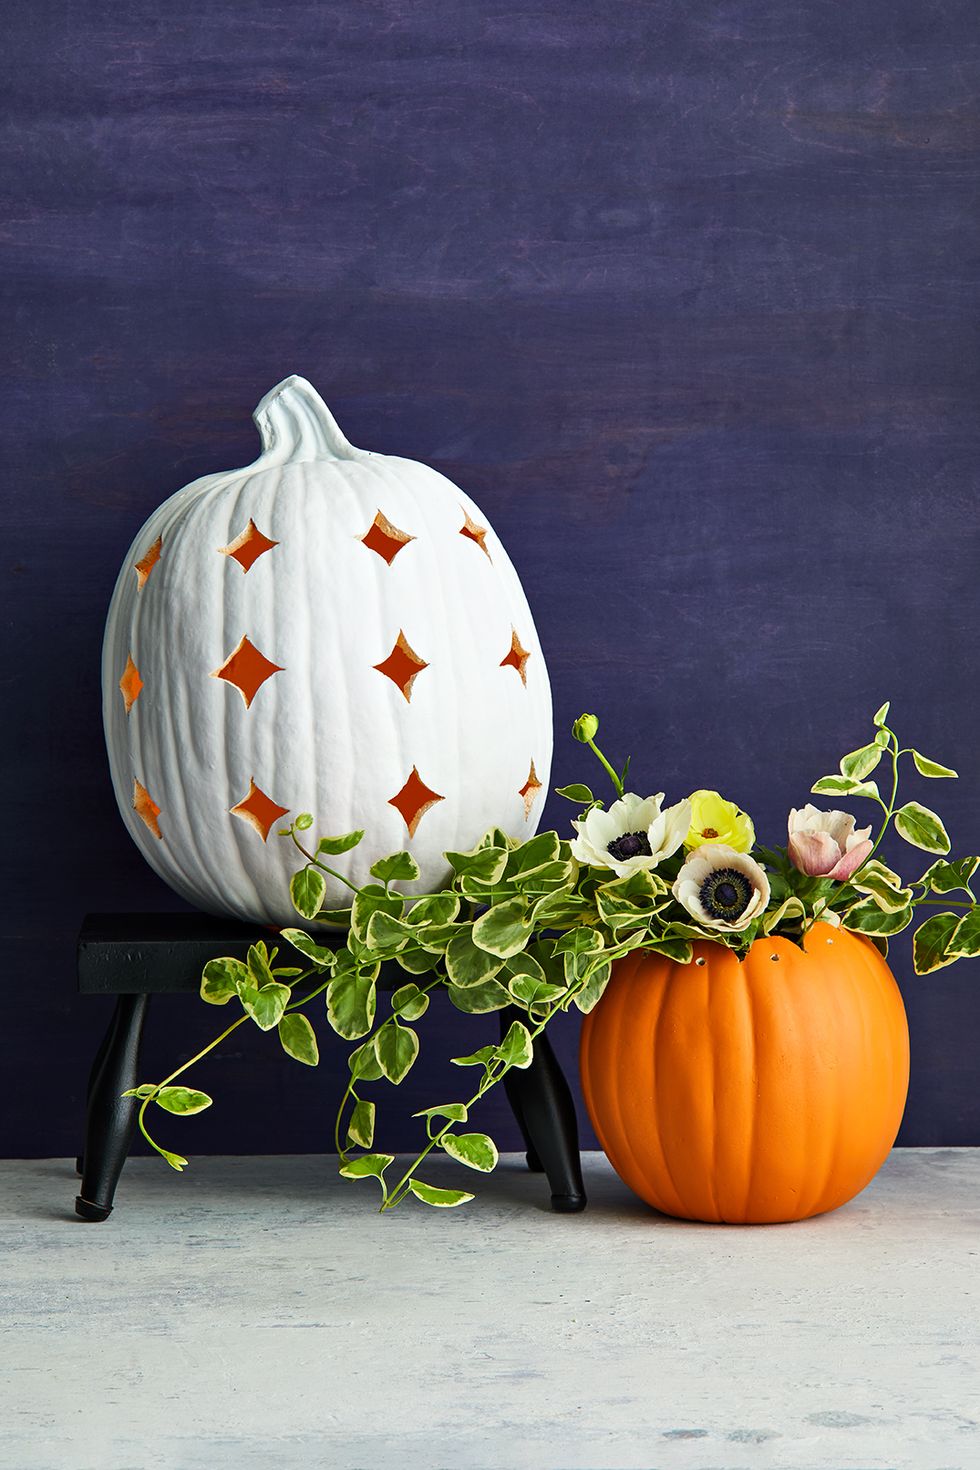 pumpkin carving ideas, white pumpkin with star cutouts